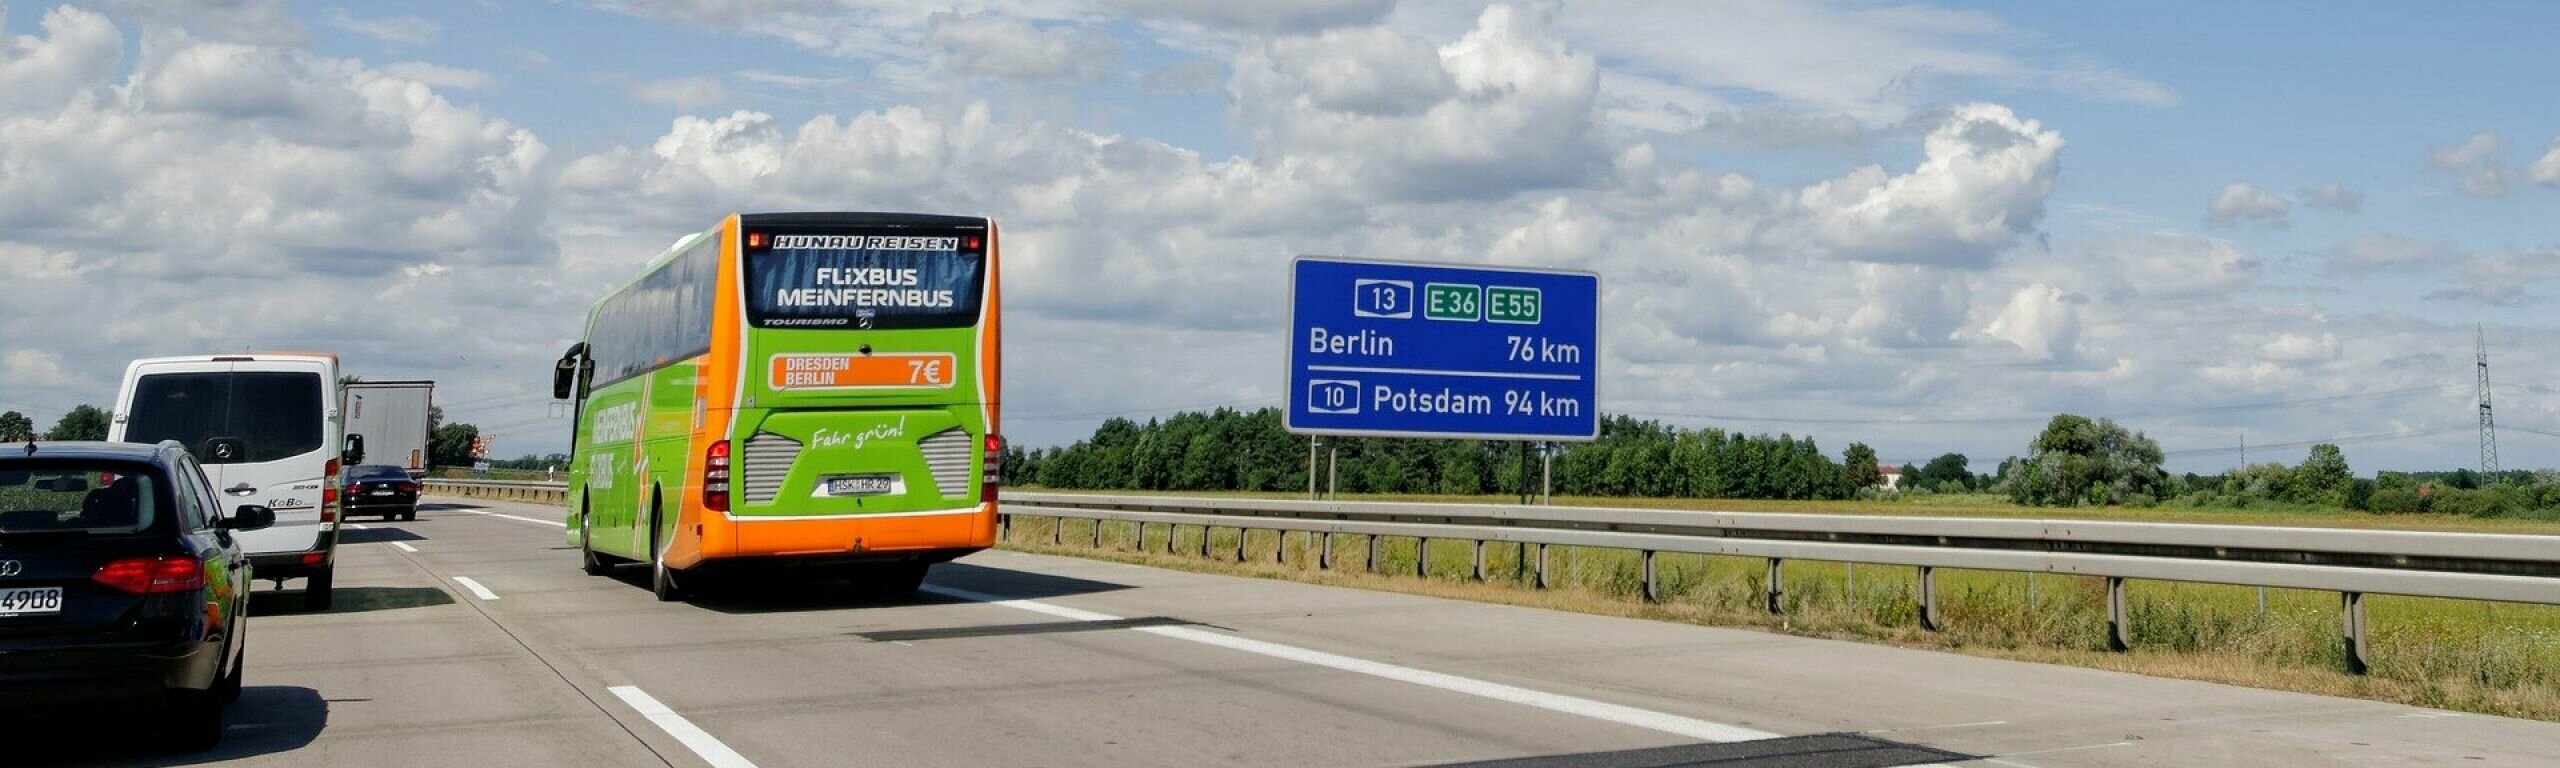 SBB sieht Fernbusse als Ergänzung in der Mobilitätskette